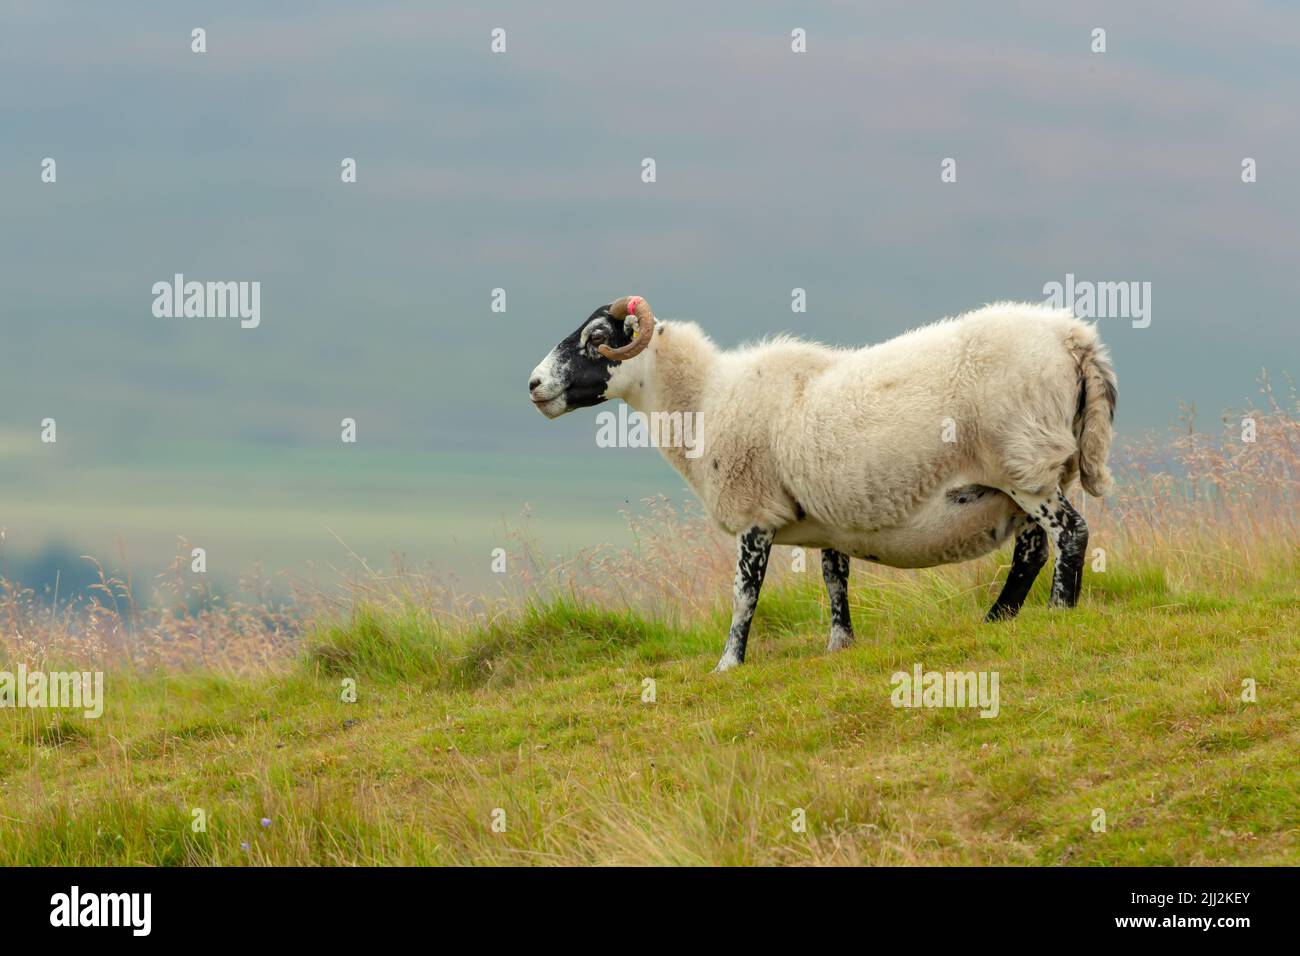 Das schottische Blackface Swaledale-Mutterschafe, oder weibliche Schafe mit lockigen Hörnern und dickem Vlies, stand auf einer üppigen Sommerwiese in Swaledale, North Yorkshire. Fac Stockfoto